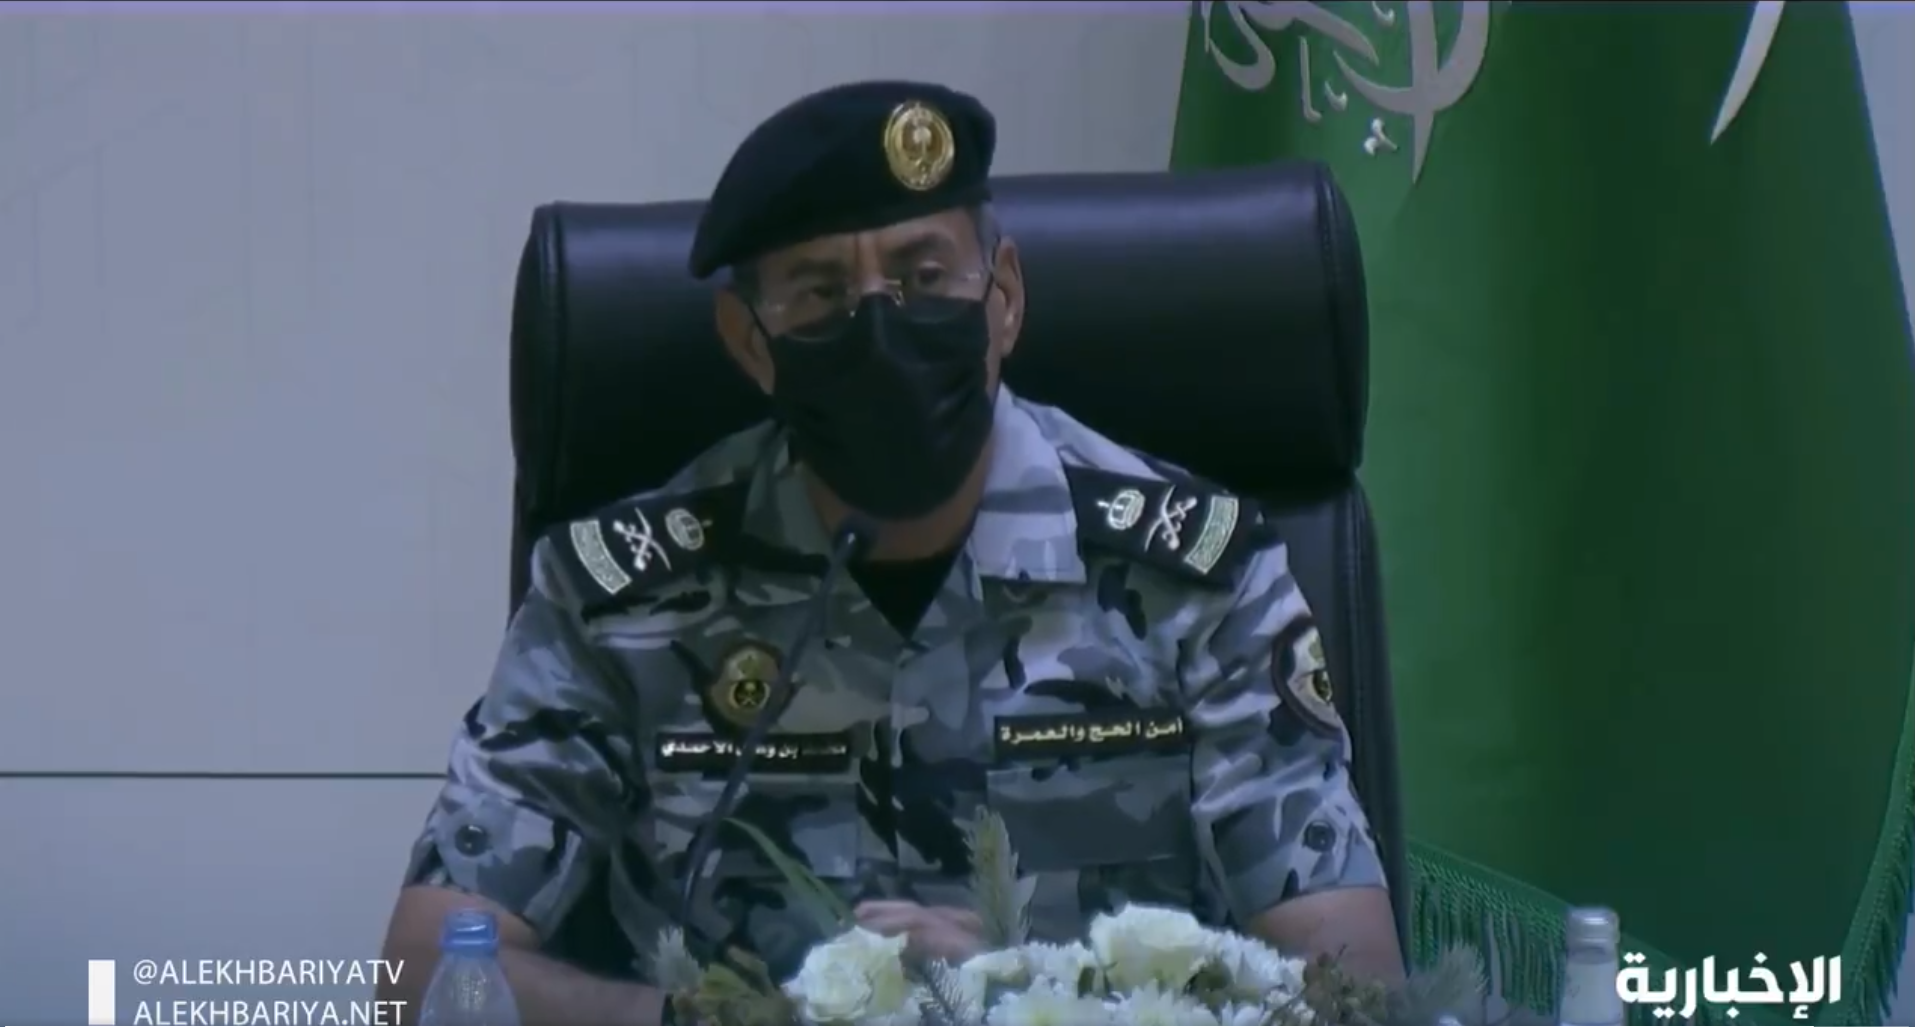 قوات أمن العمرة: لن يُسمح بالوصول إلى المسجد الحرام إلا بتصريح